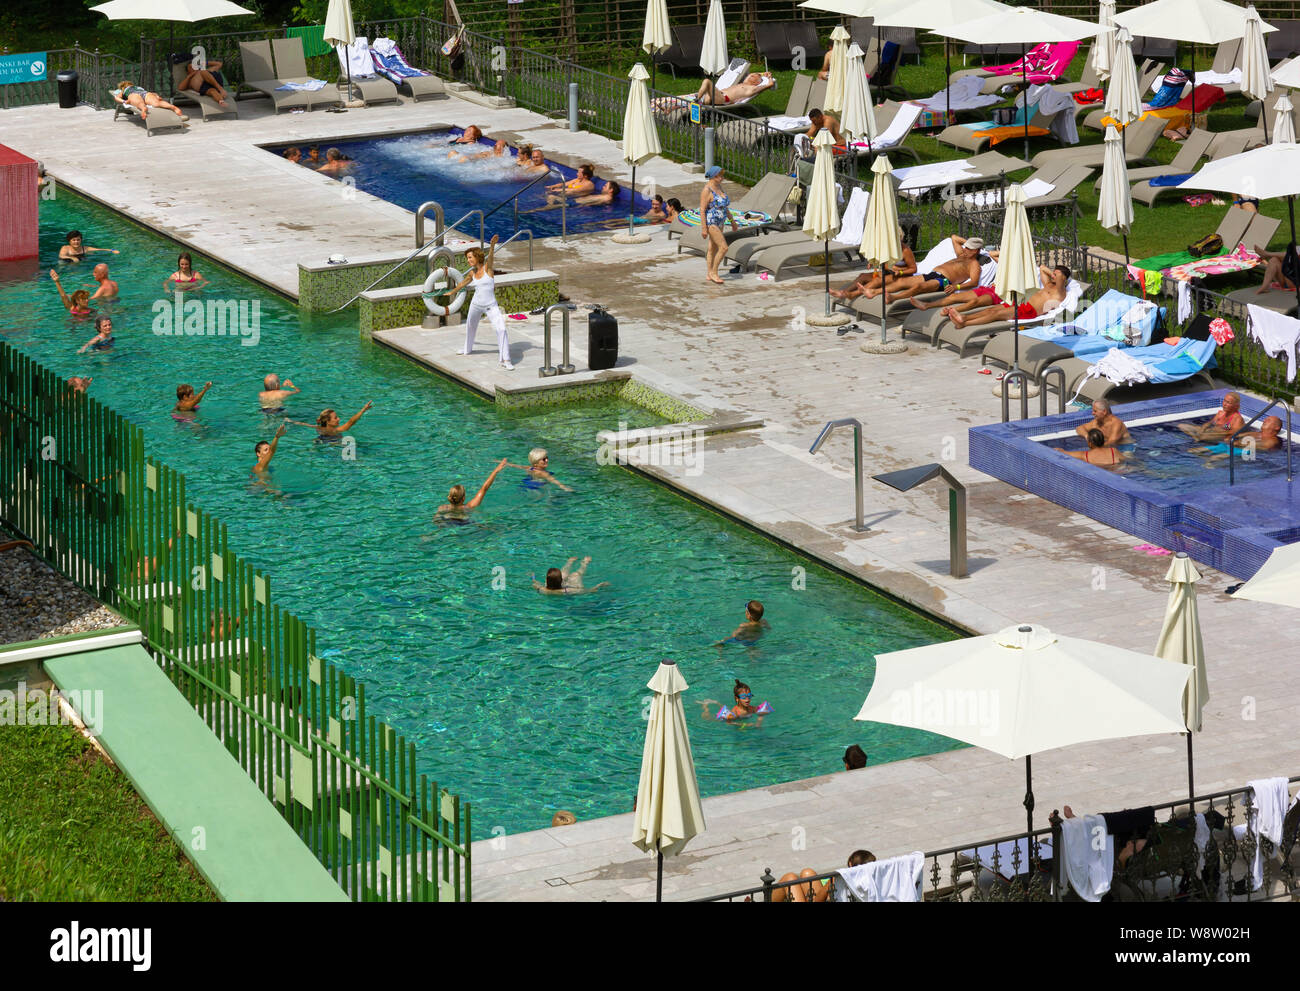 RIMSKE TOPLICE, Slovenia - 3 Agosto 2019: Il centro termale dispone di piscina esterna durante un aqua aerobics session Foto Stock